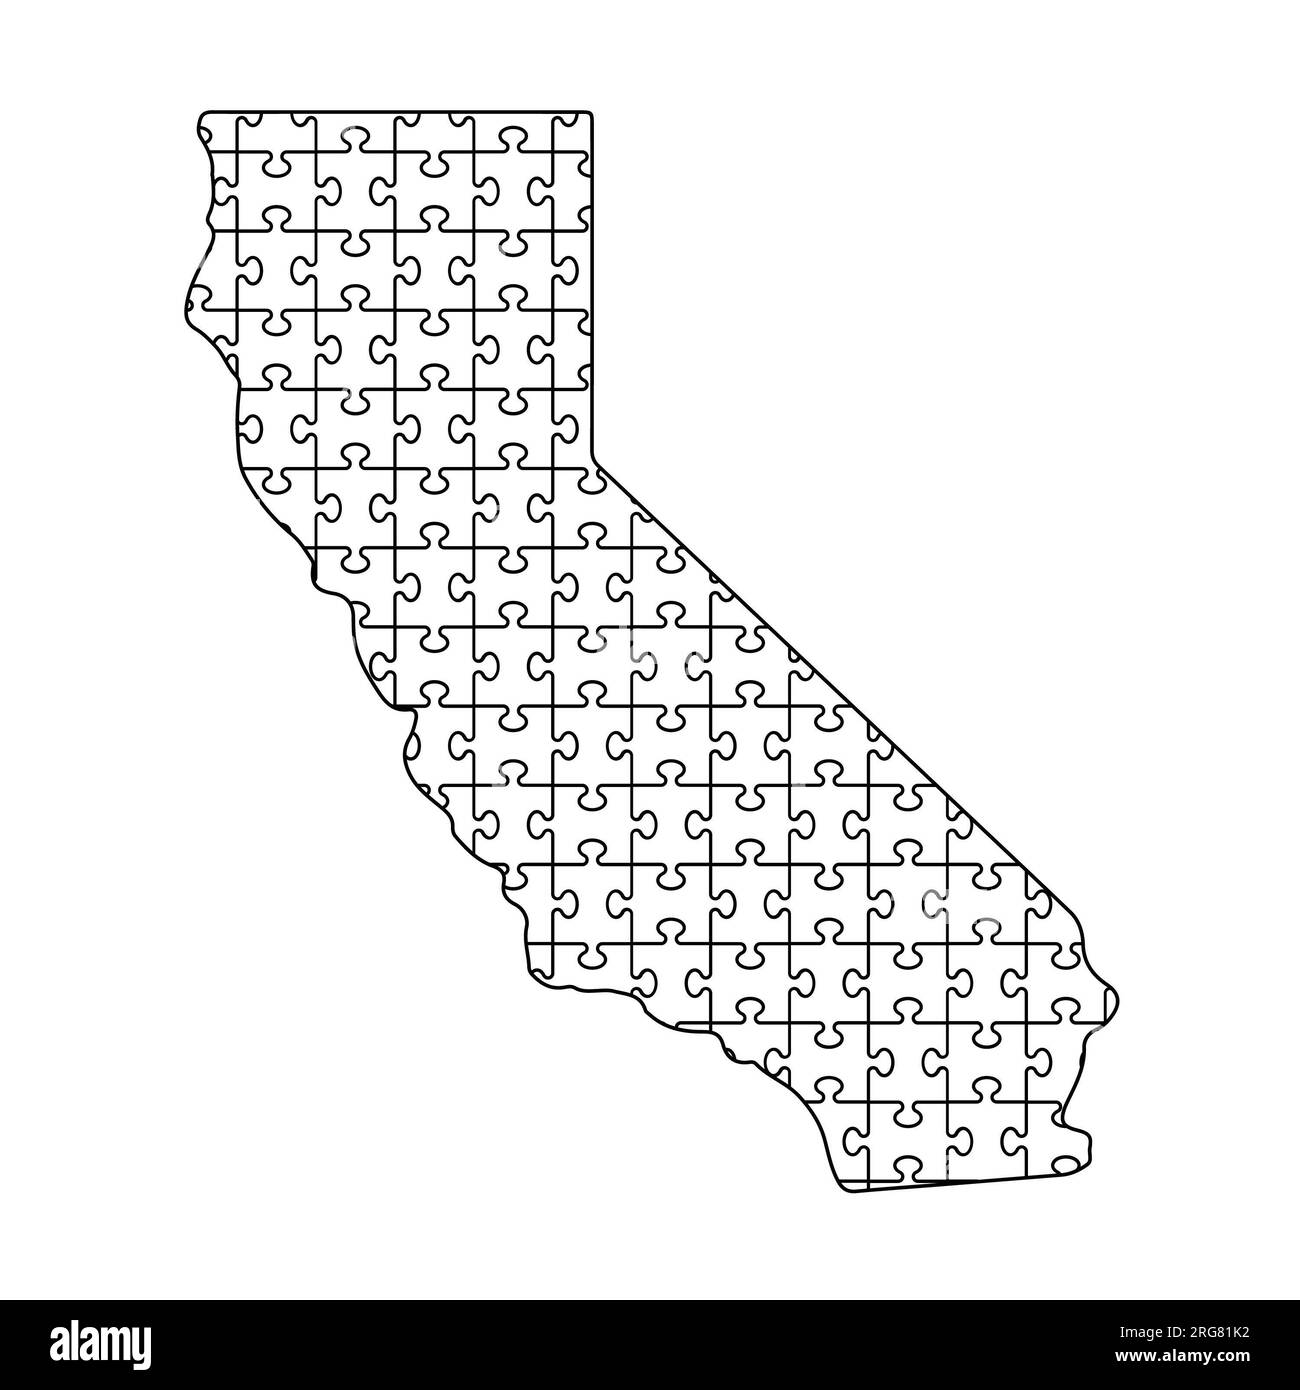 California jigsaw puzzle map on white background. Isolated illustration. Stock Photo